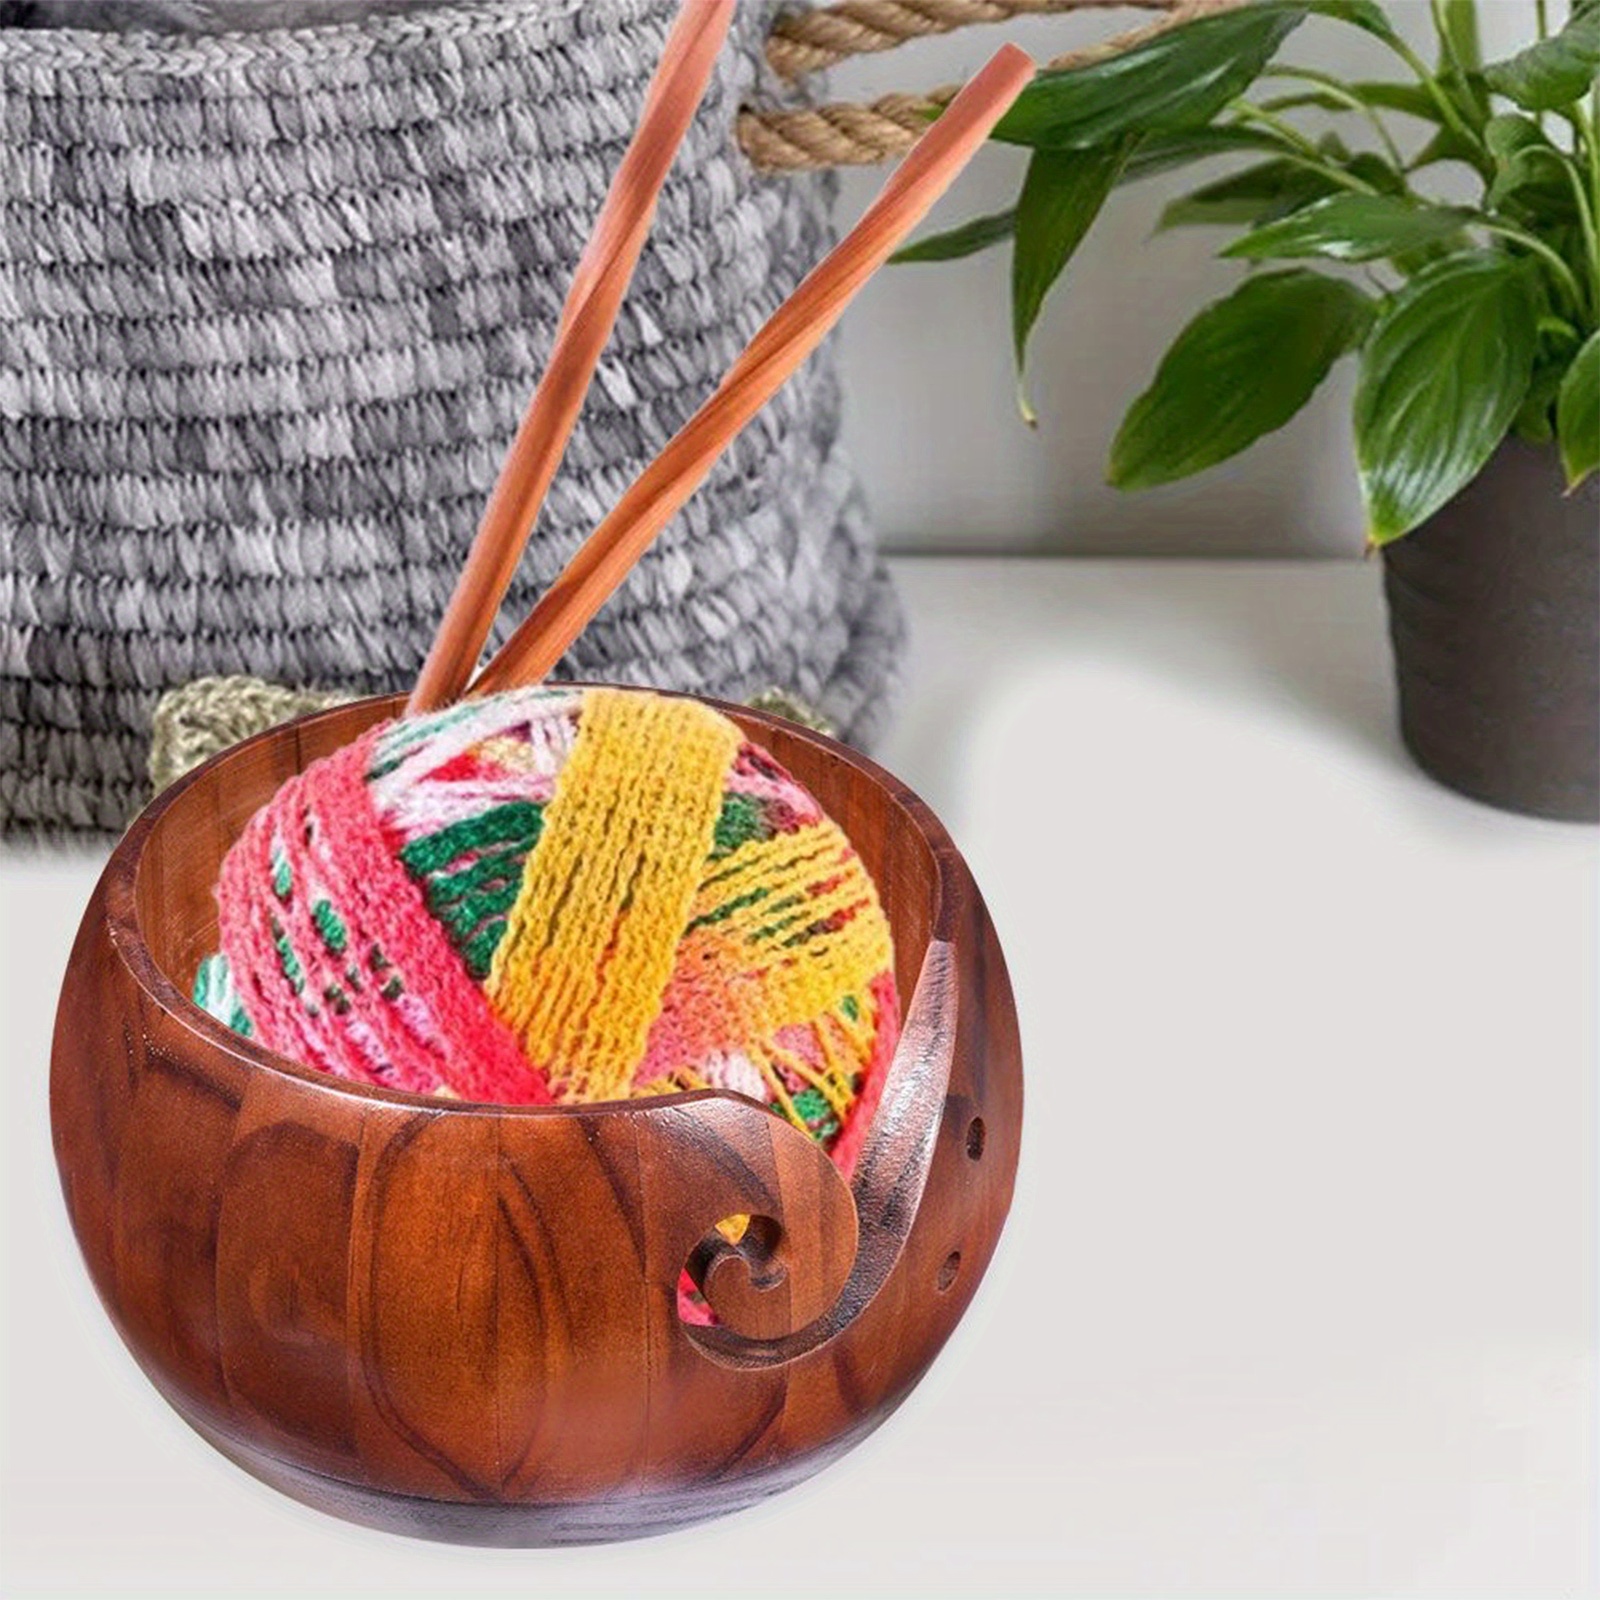 Yarn Storage Bowl Yarn Bowls For Crocheting Wooden Yarn Bowl Crochet Bowl  Holder Handmade Yarn Storage Bowl For DIY Knitting - AliExpress